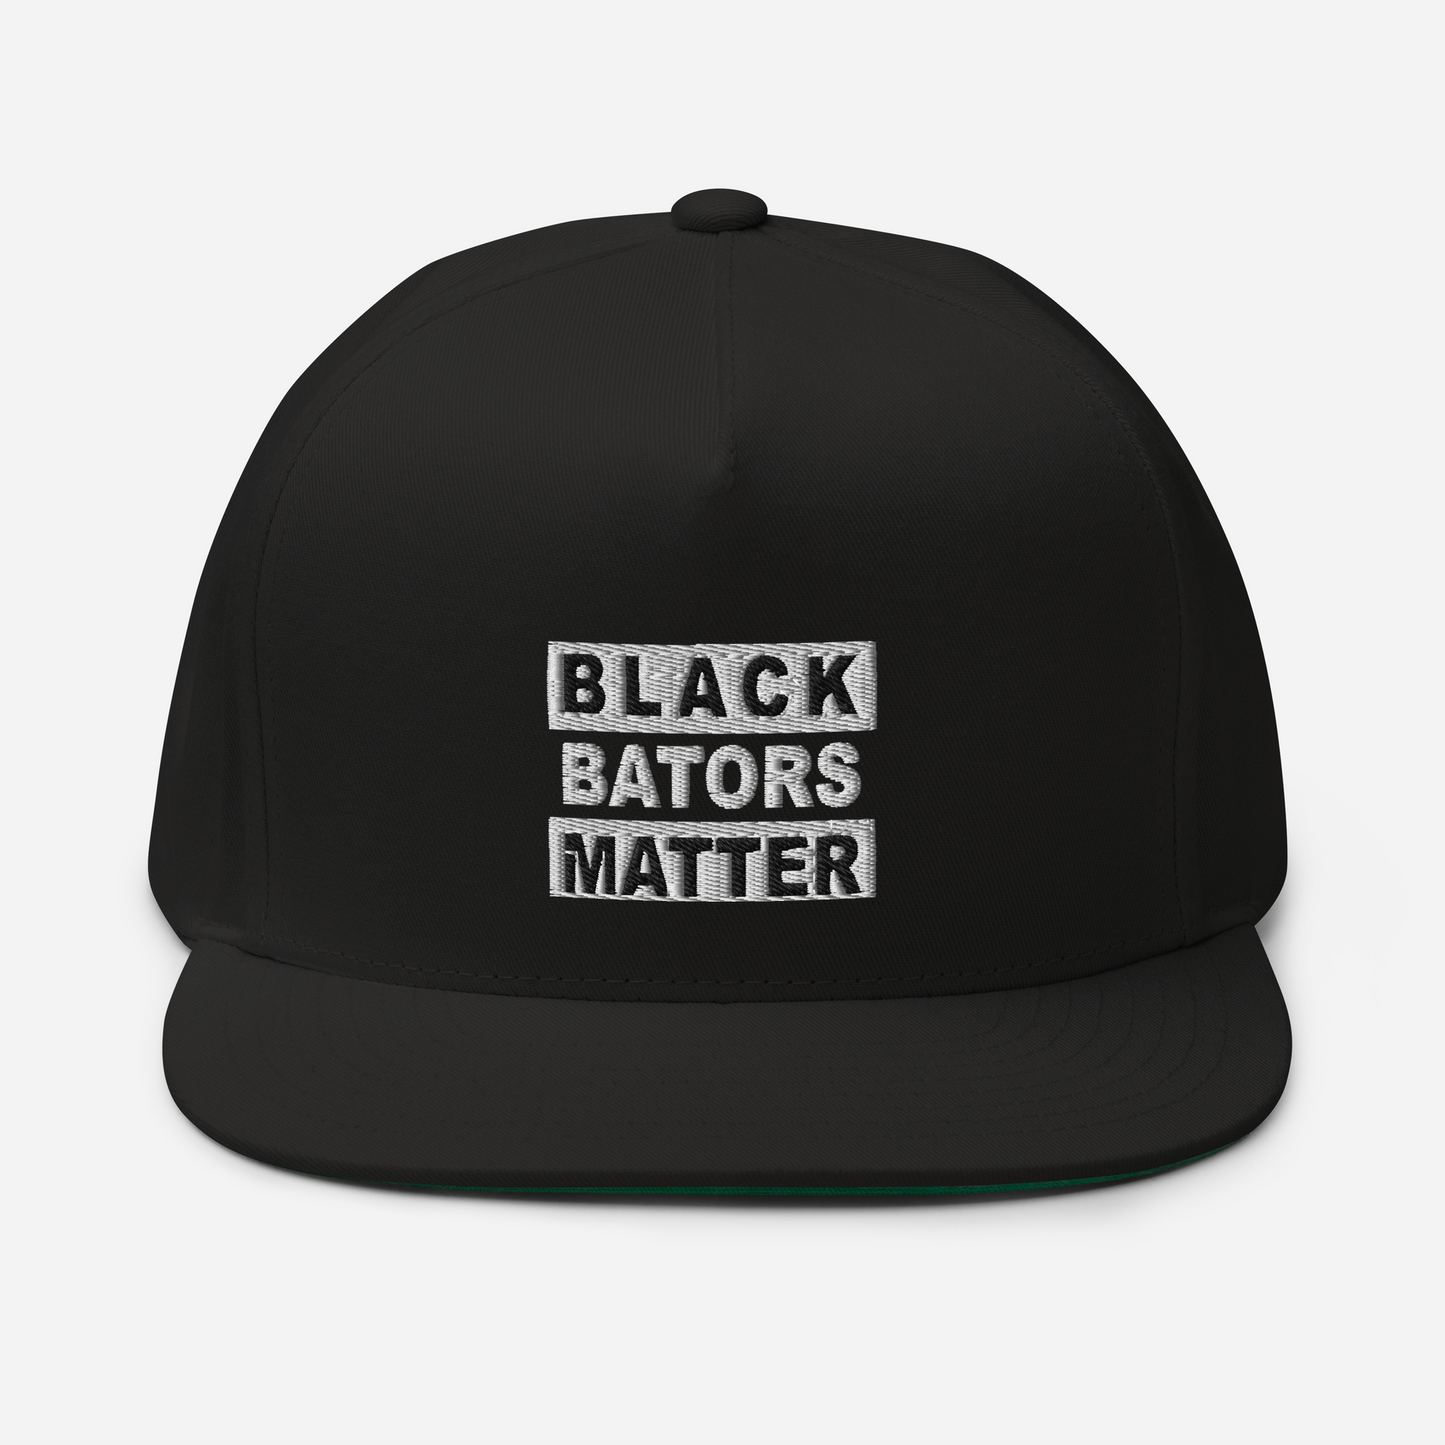 Black Bators Matter - Flat Bill Cap